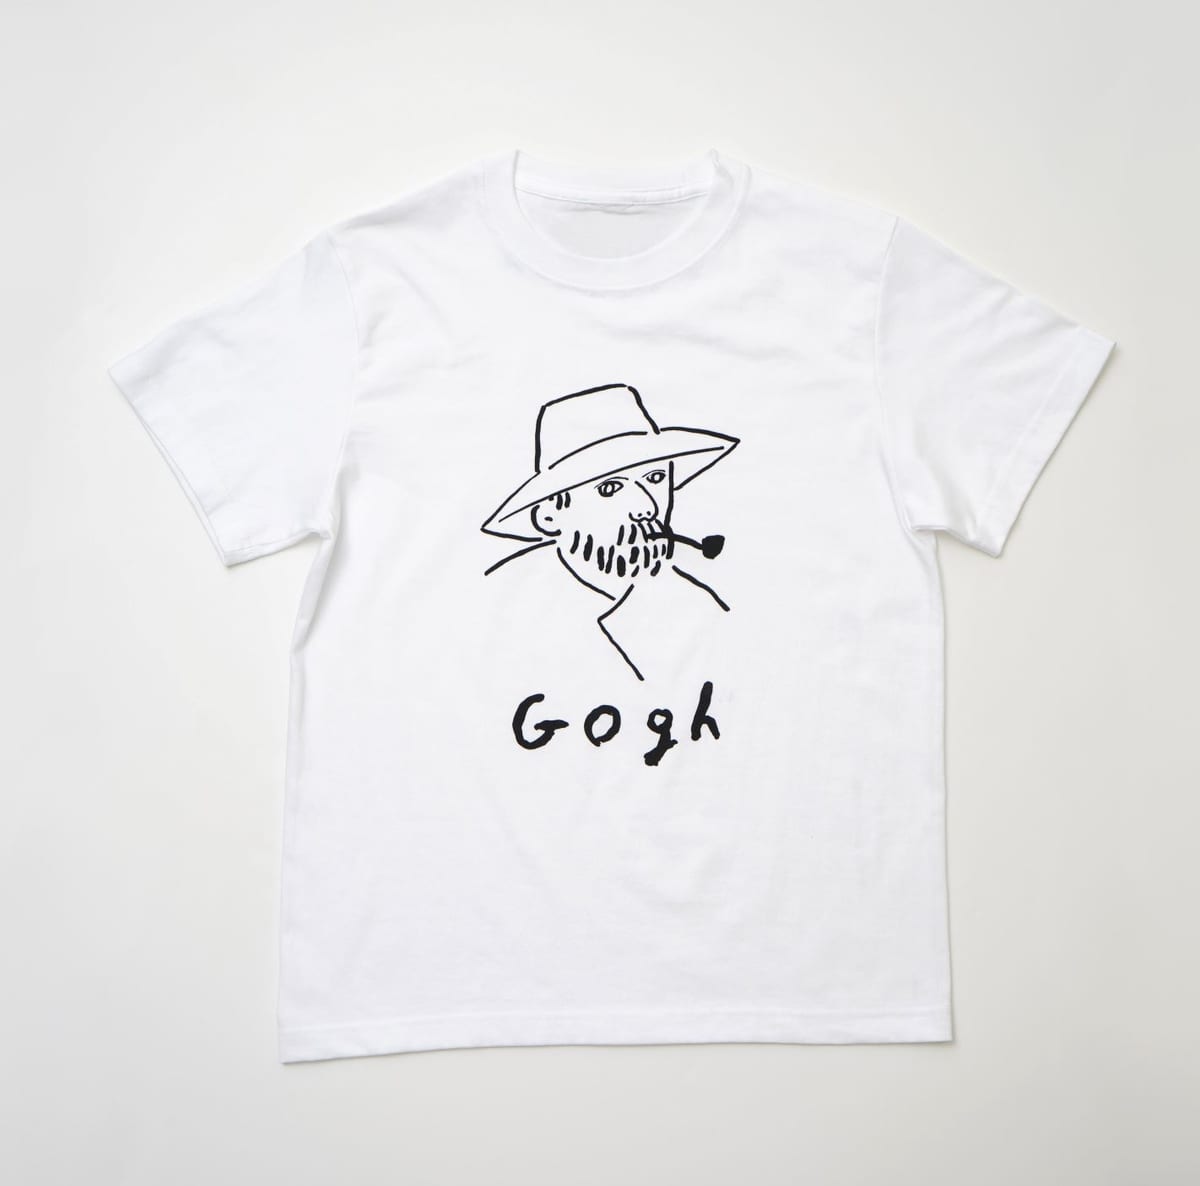 パルコ　人気イラストレーター、塩川いづみさんによるゴッホ自画像を用いたTシャツ